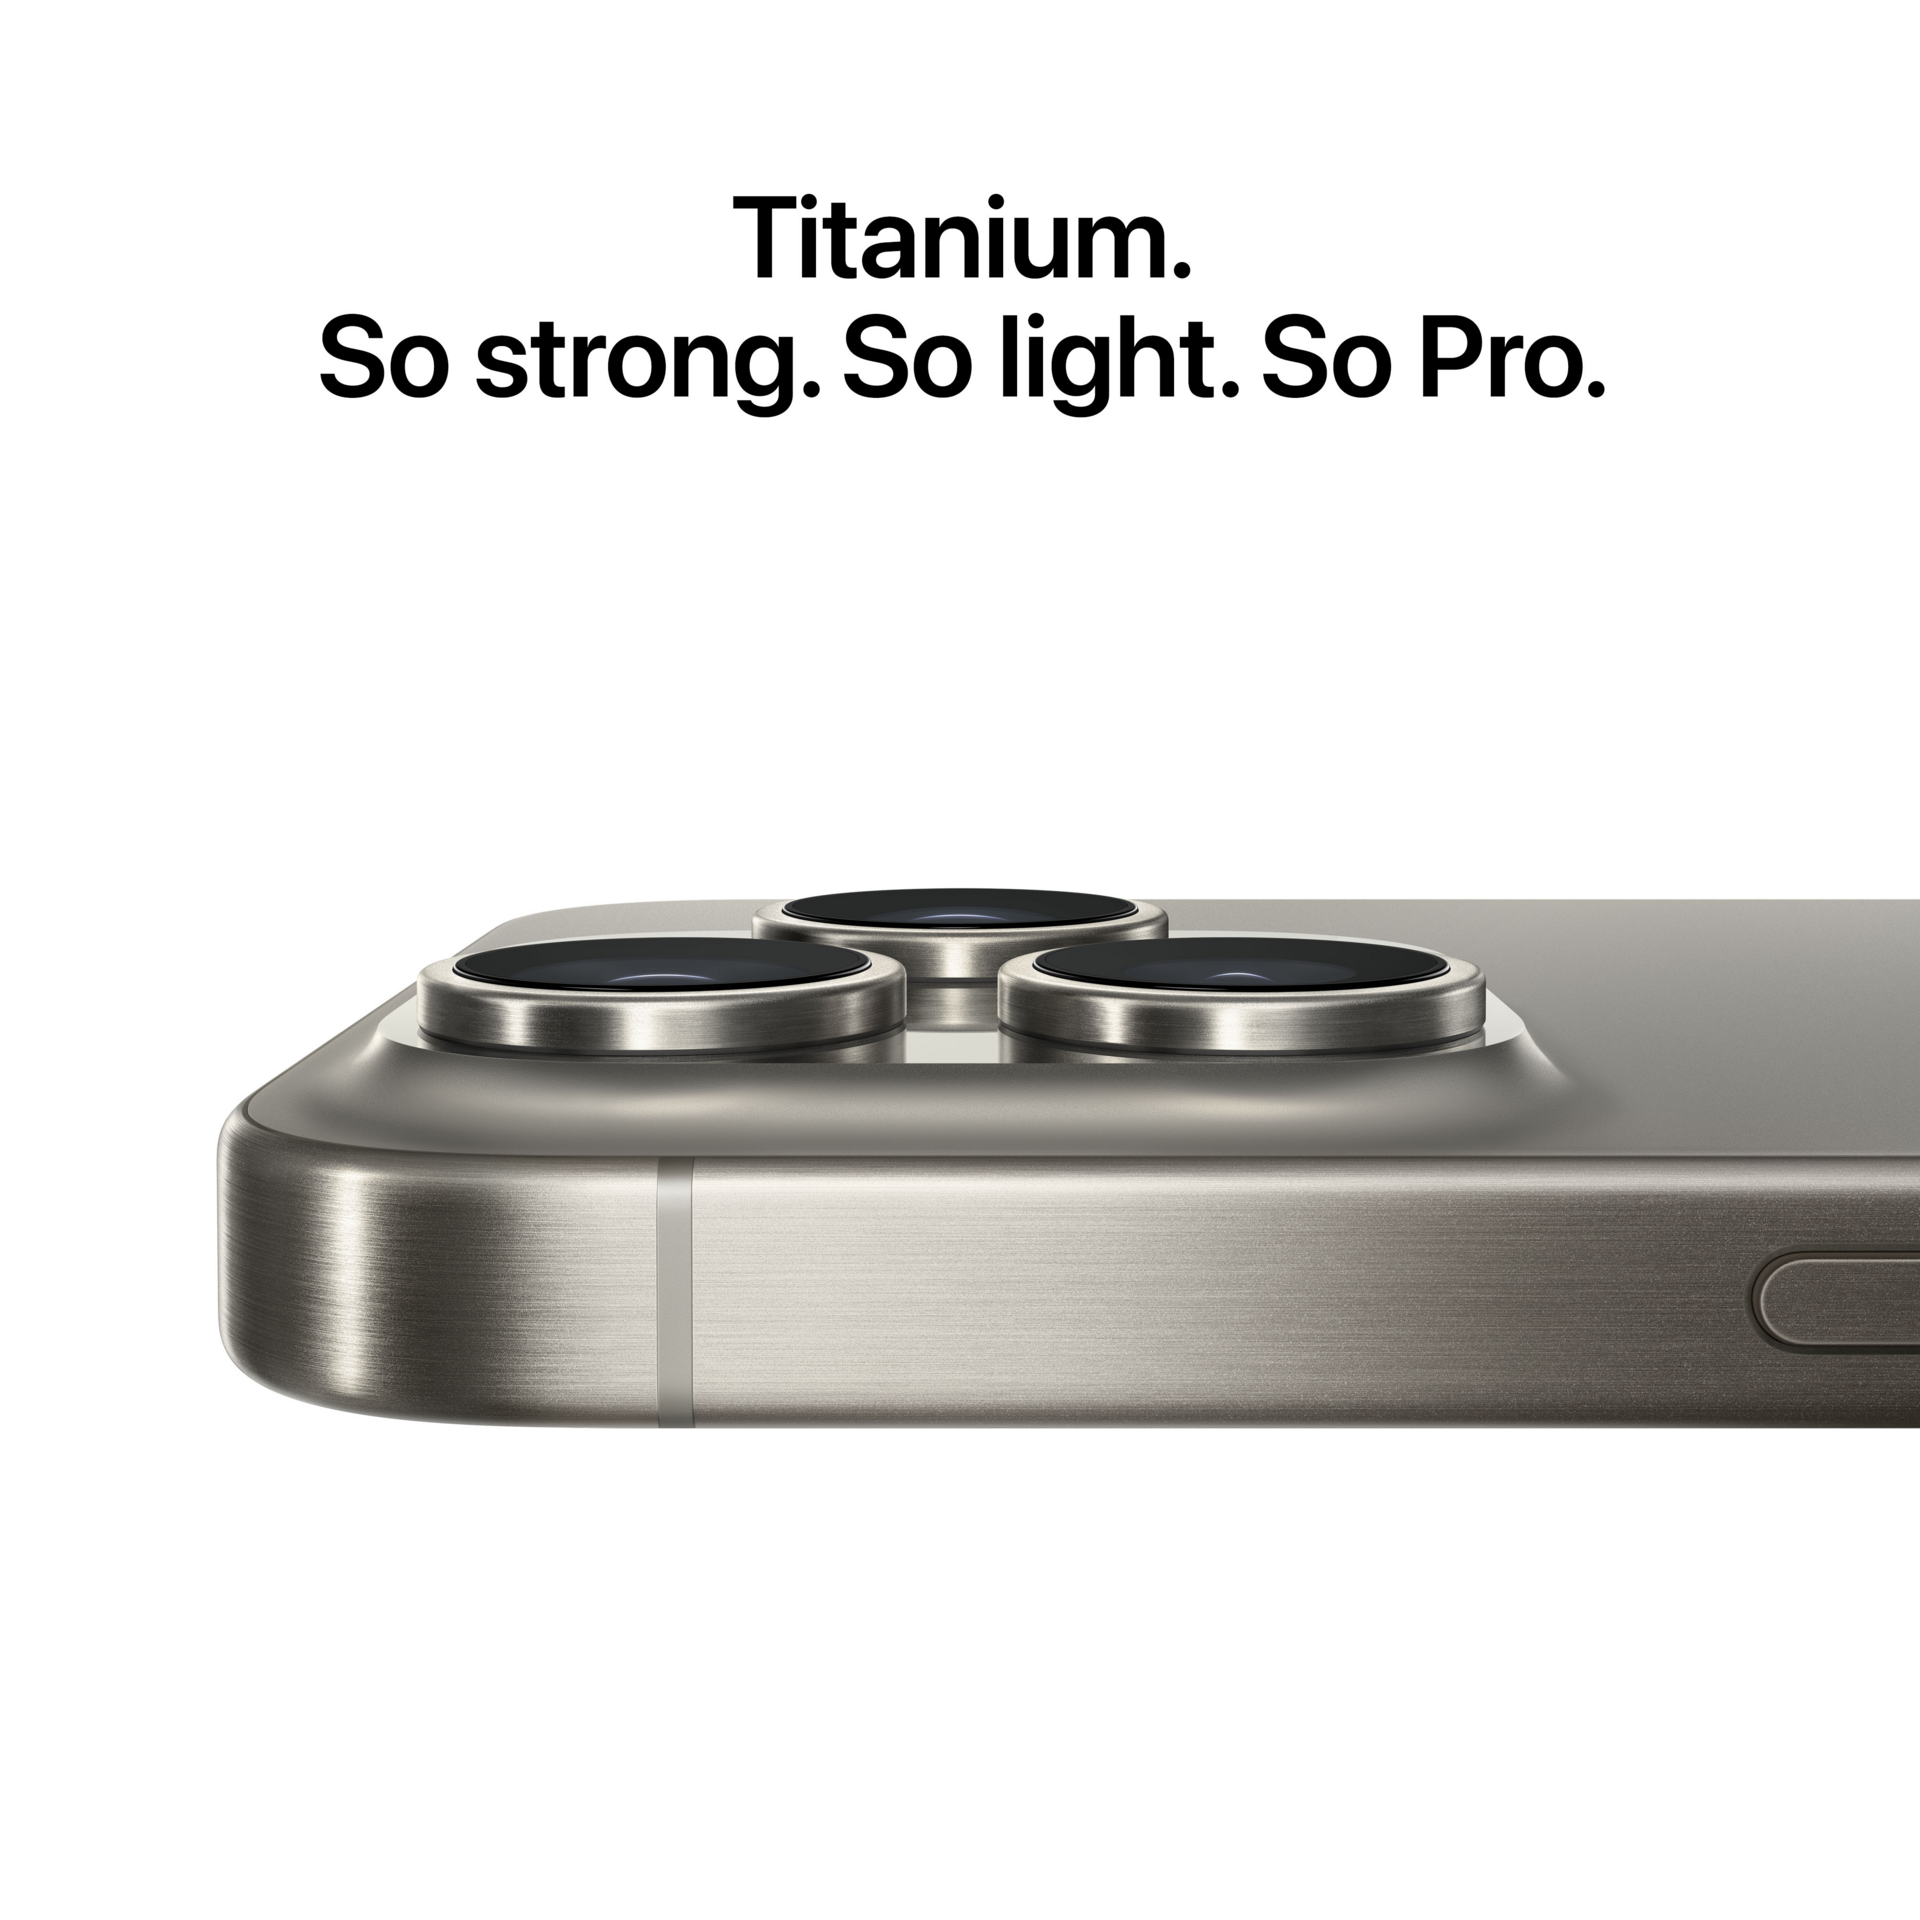 Buy iPhone 15 Pro Max 256GB Blue Titanium - Apple